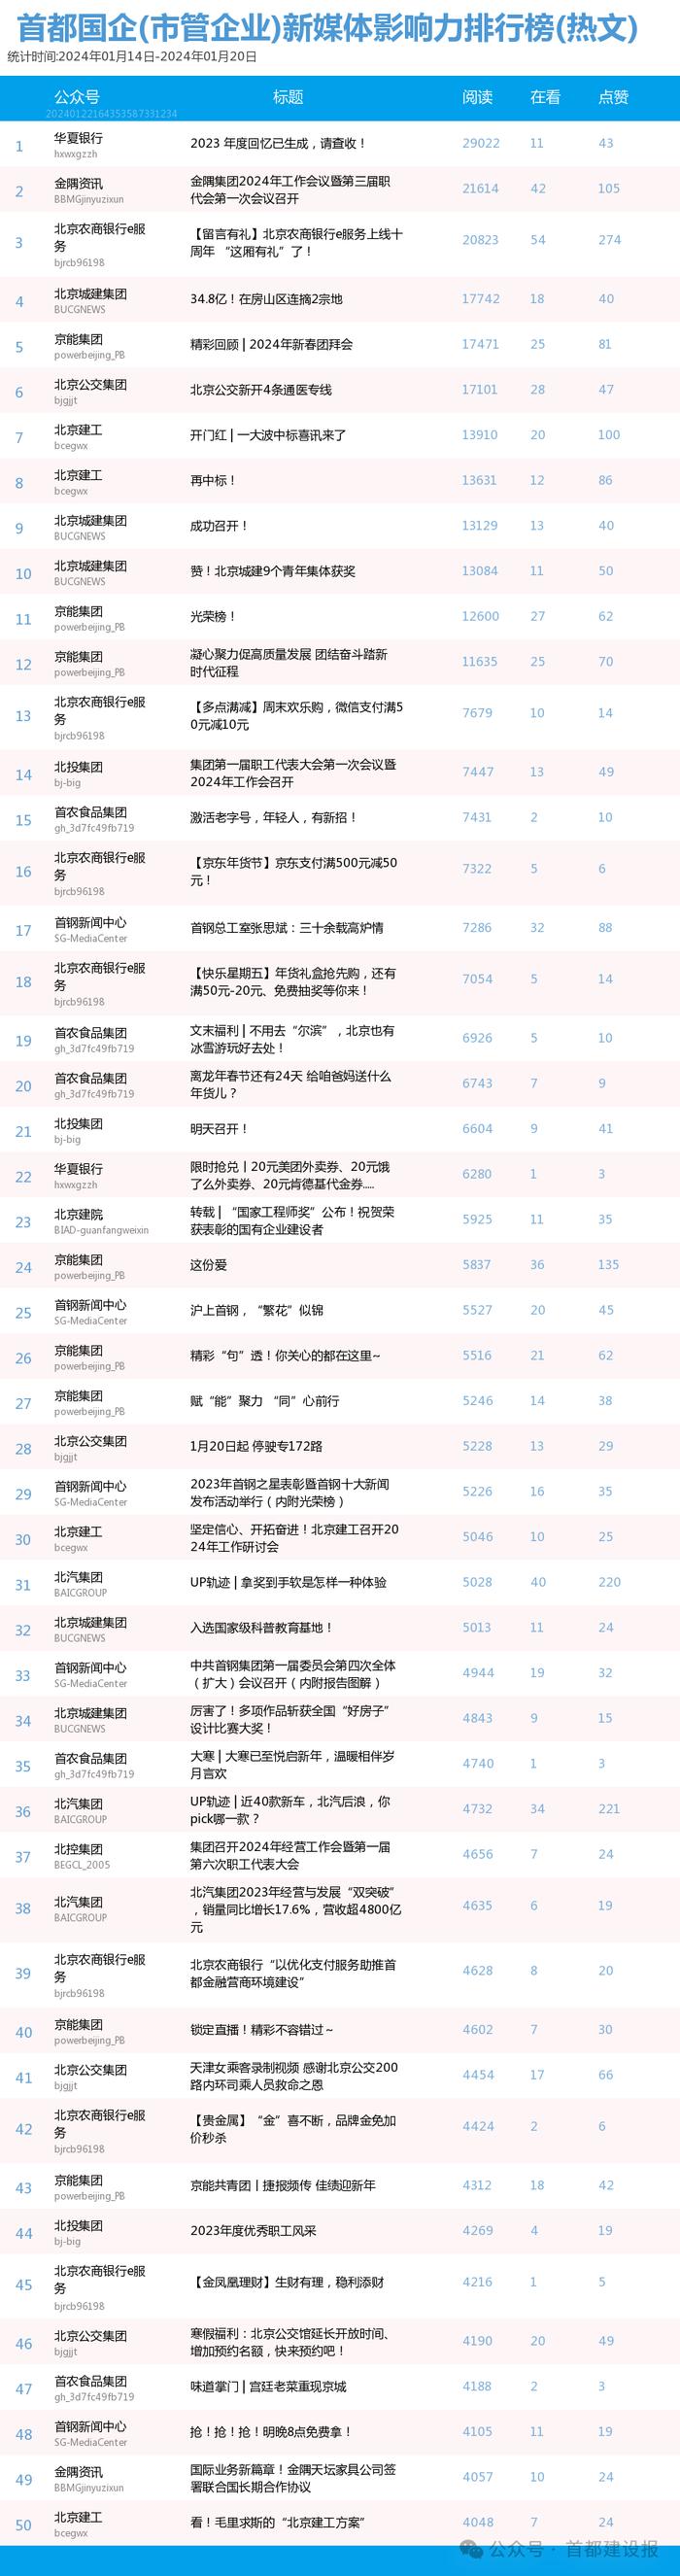 【北京国企新媒体影响力排行榜】1月周榜(1.14-1.20)第391期